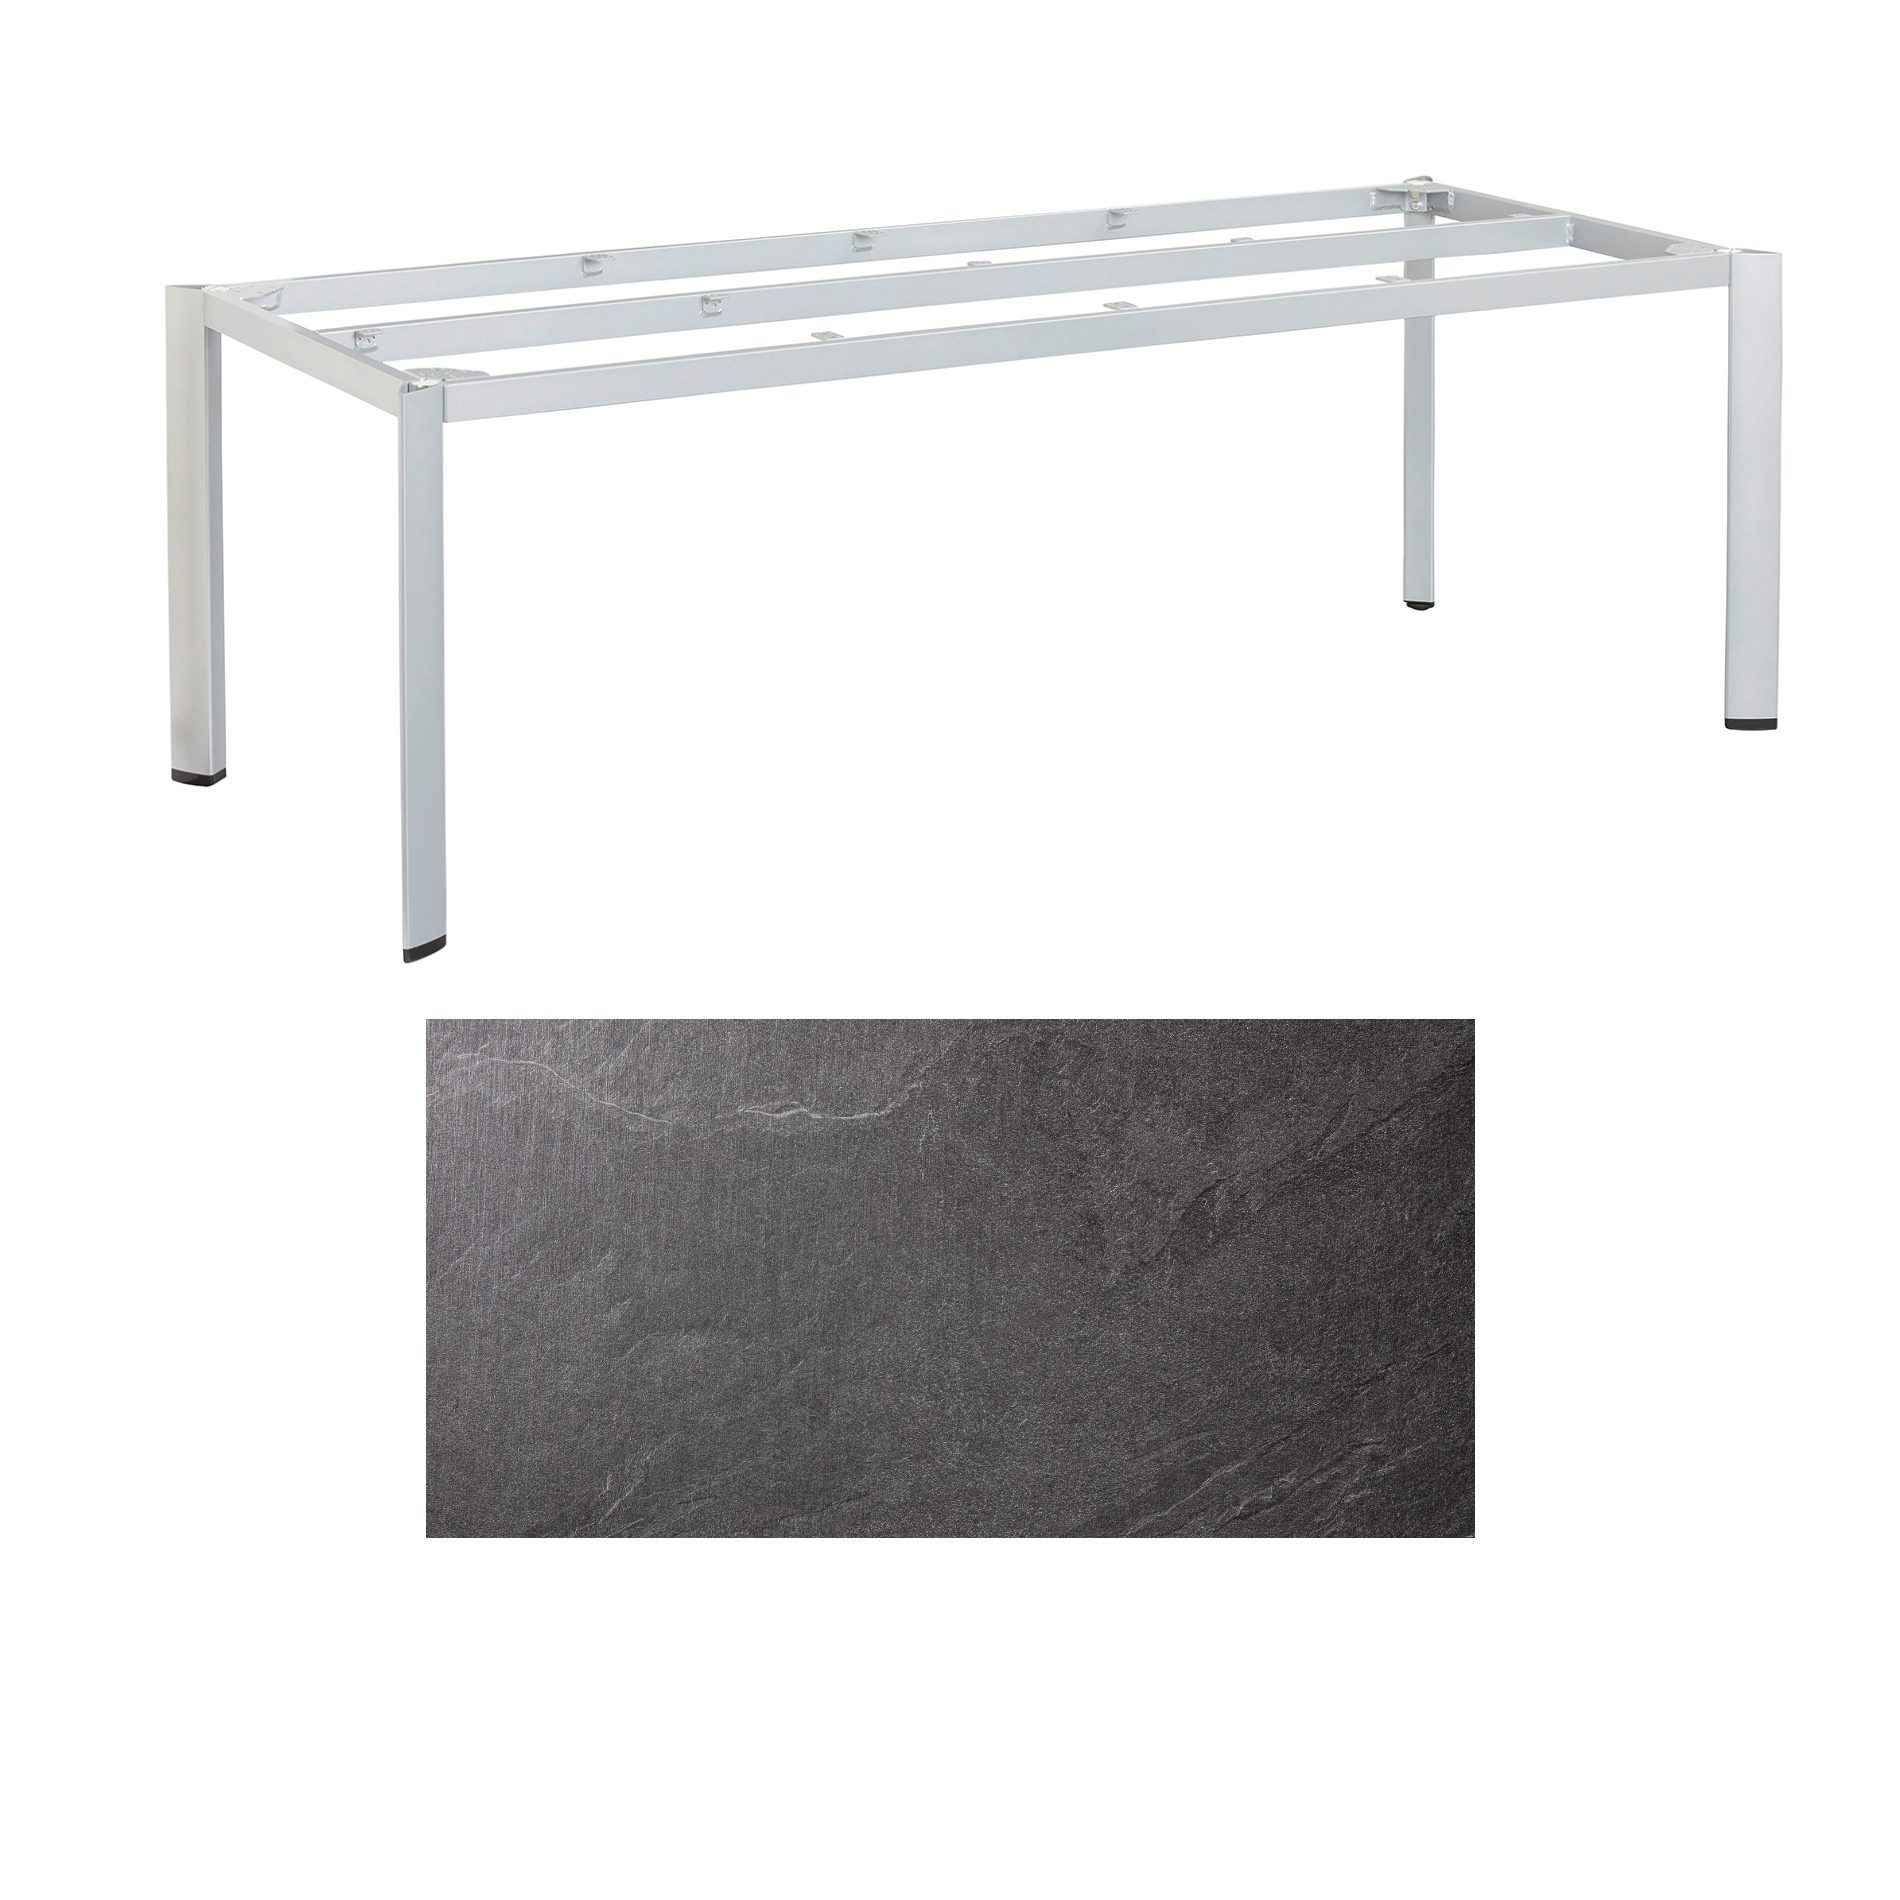 Kettler "Edge" Gartentisch, Gestell Aluminium silber, Tischplatte HPL Jura anthrazit, 220x95 cm